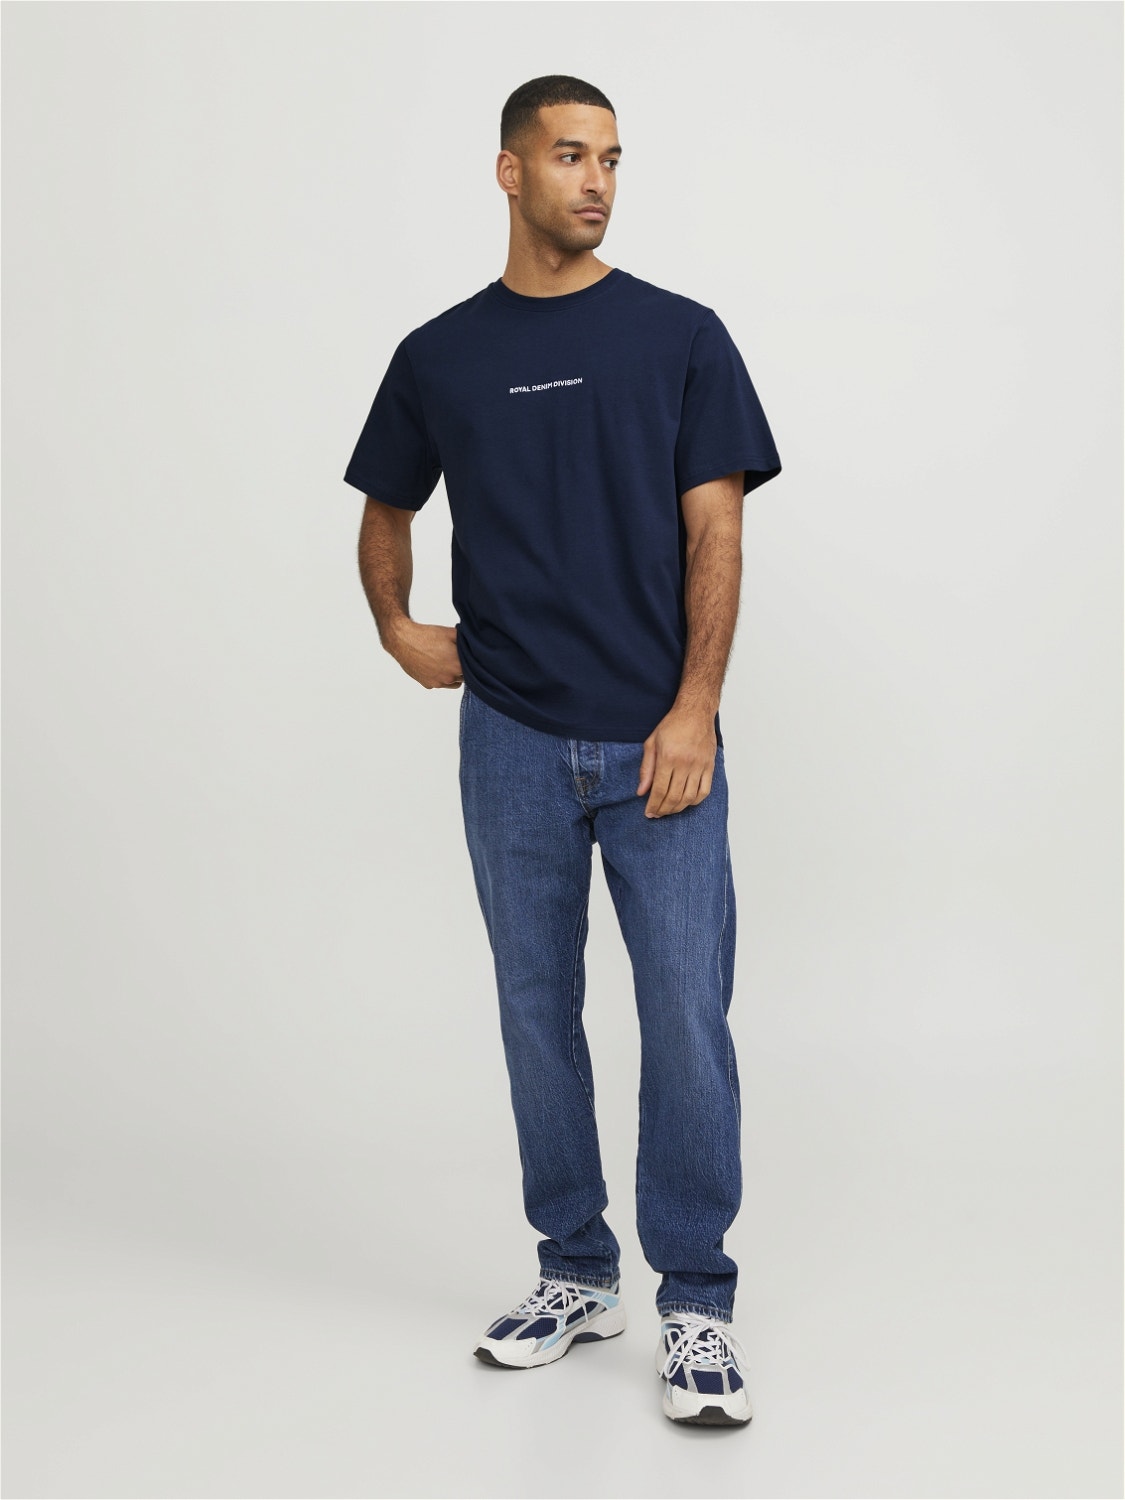 Jack & Jones RDD T-shirt Estampar Decote Redondo -Navy Blazer - 12253164